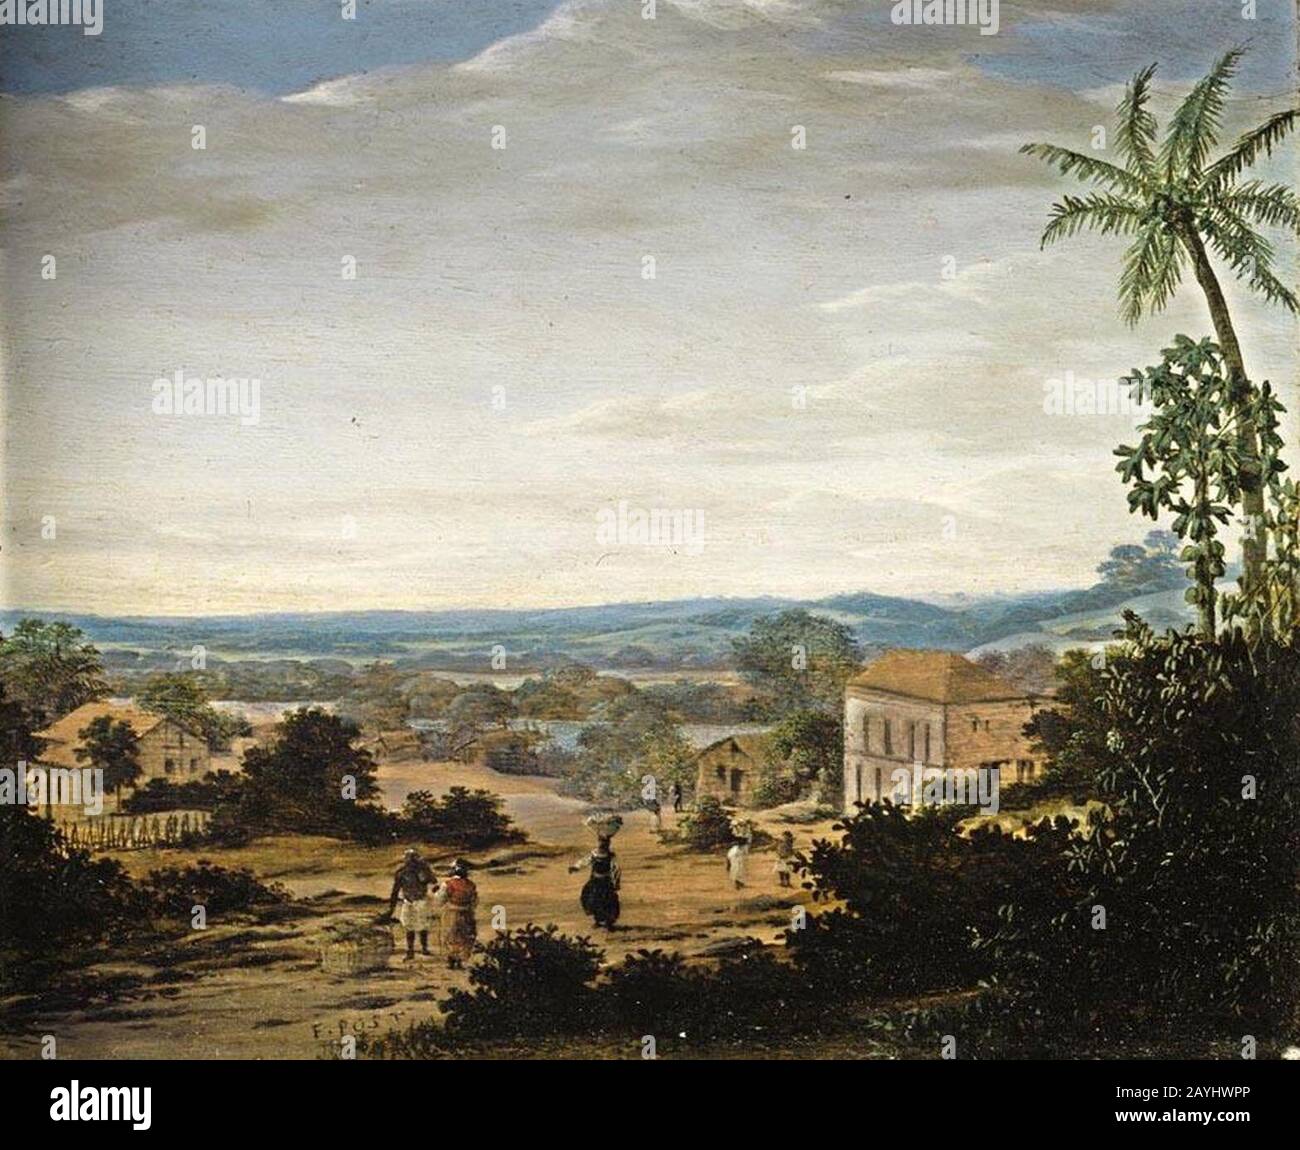 Frans Post - Paisagem com nativos, escravos e casa-grande em um vilarejo, c. 1670-75. Foto Stock